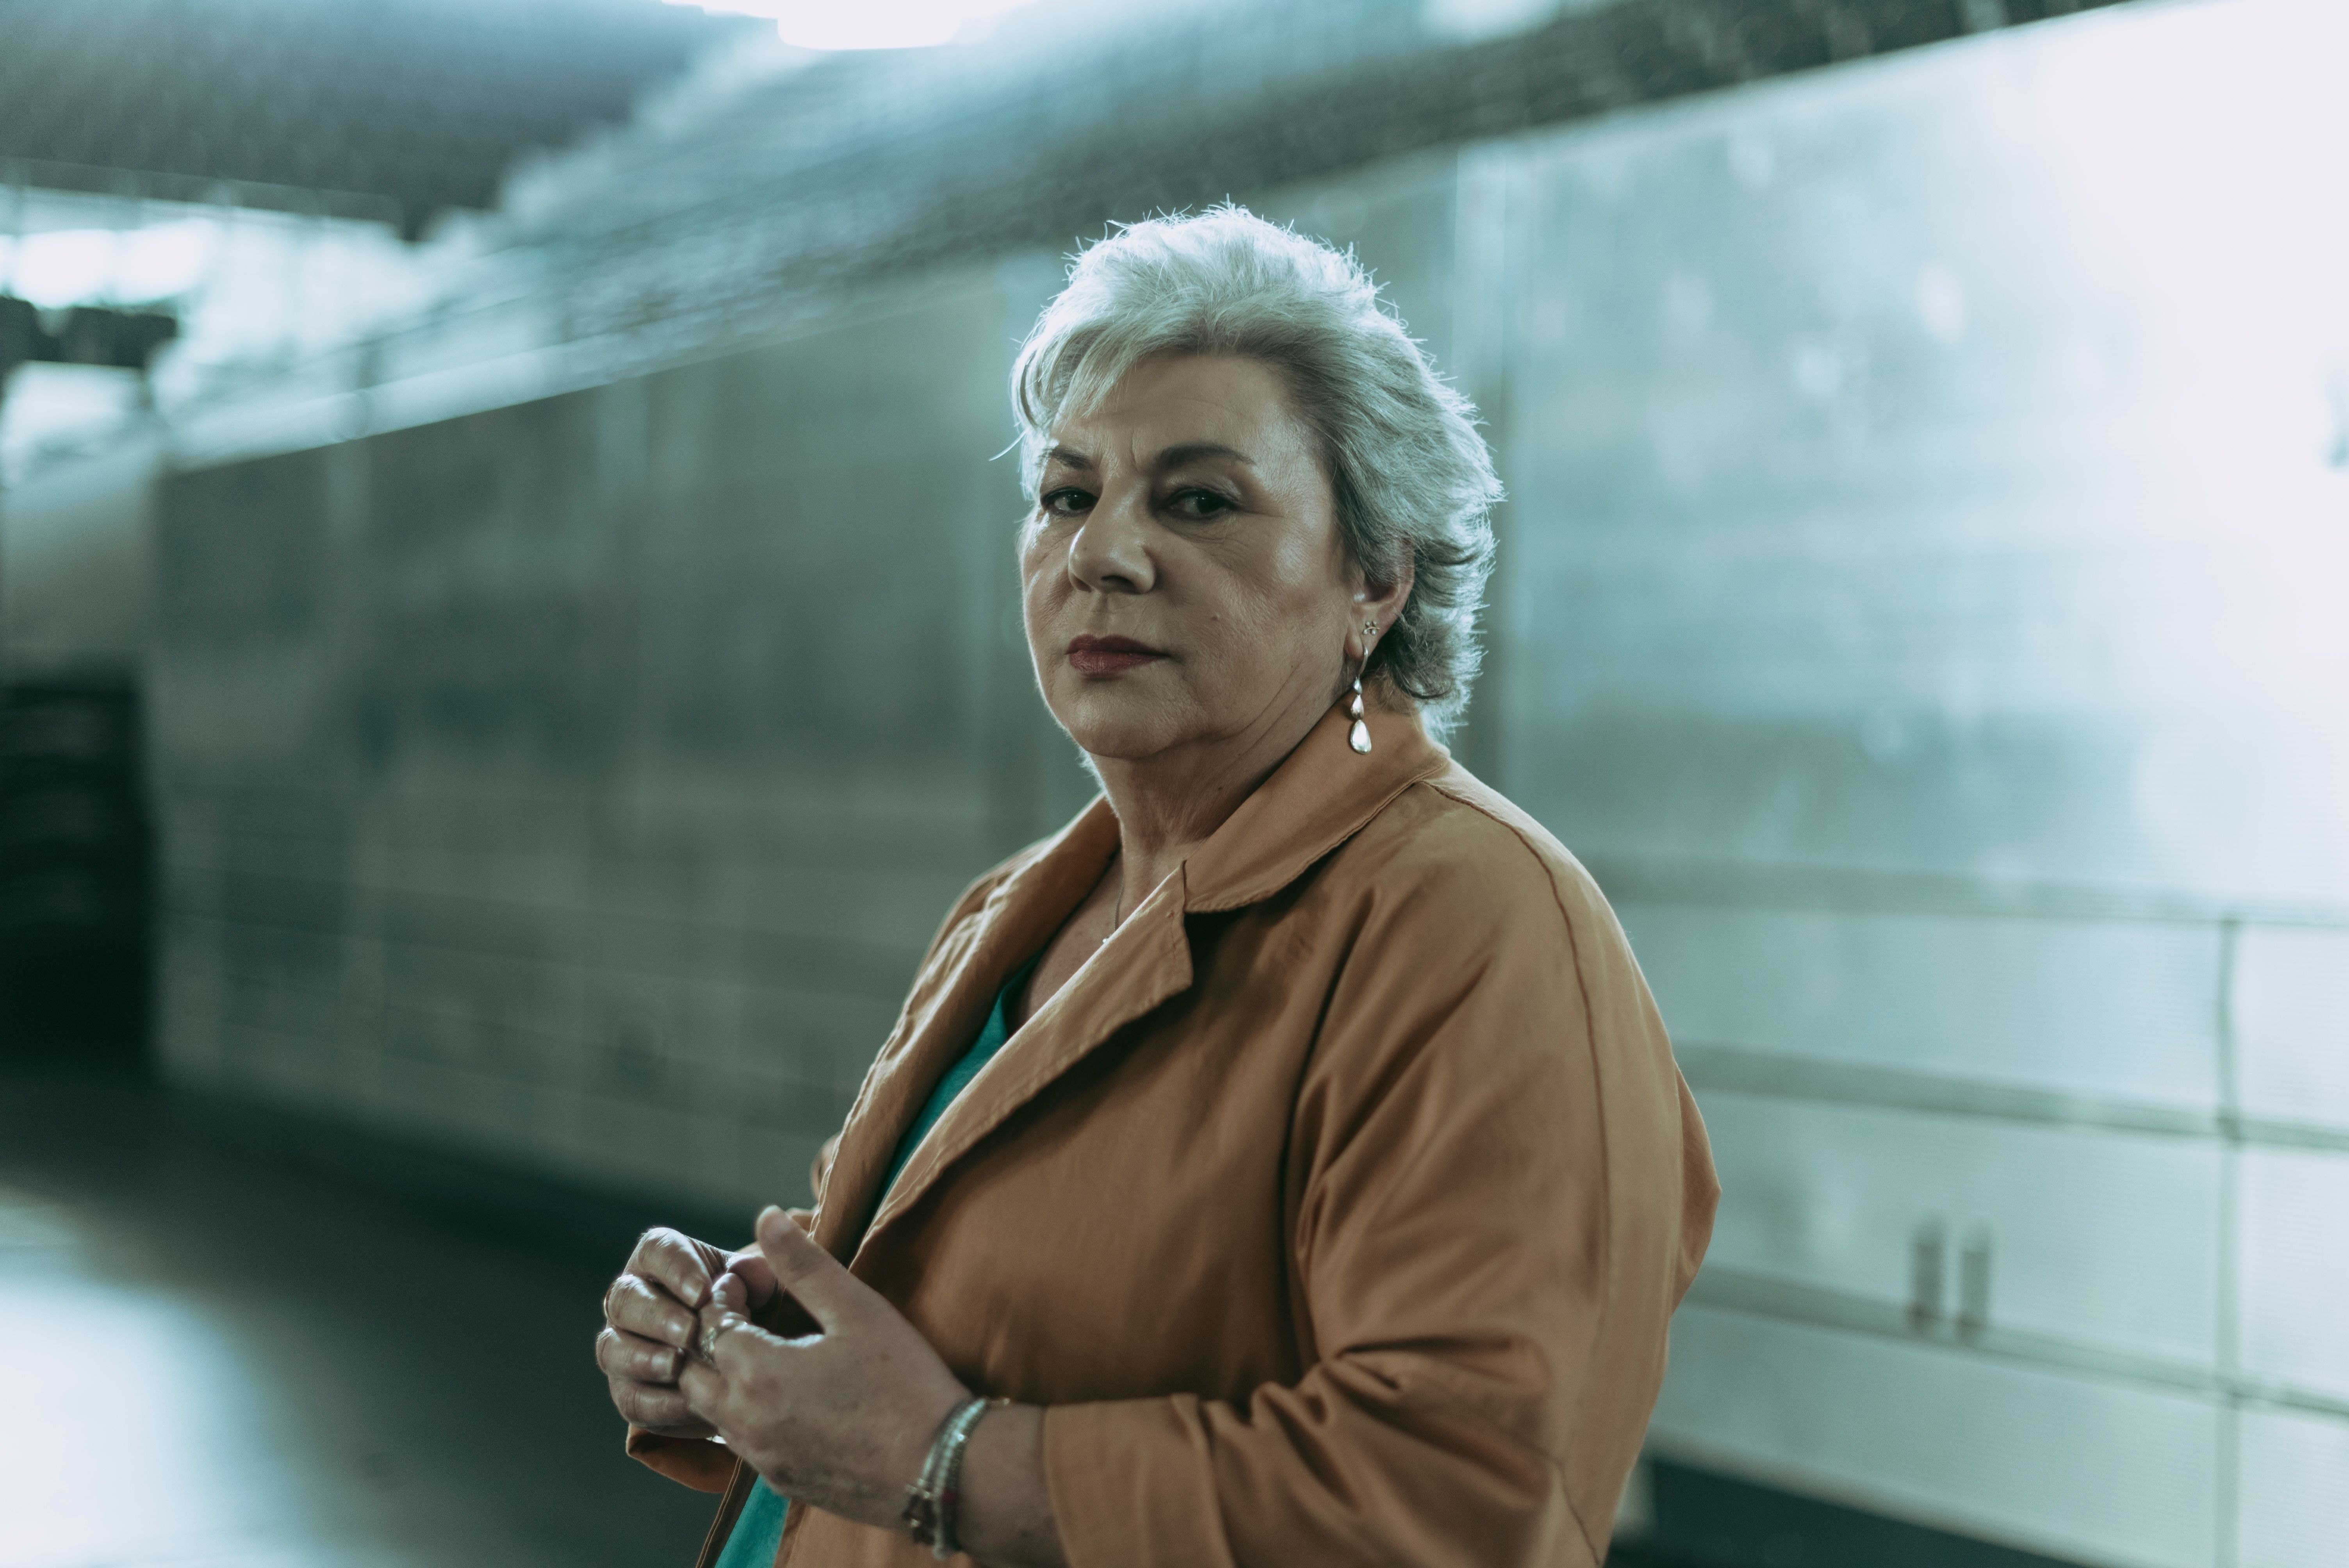 Dolores Vázquez rompe su silencio sobre el caso Wanninkhof: "Debo mi vida a Sonia Carabantes". Foto: Europa Press